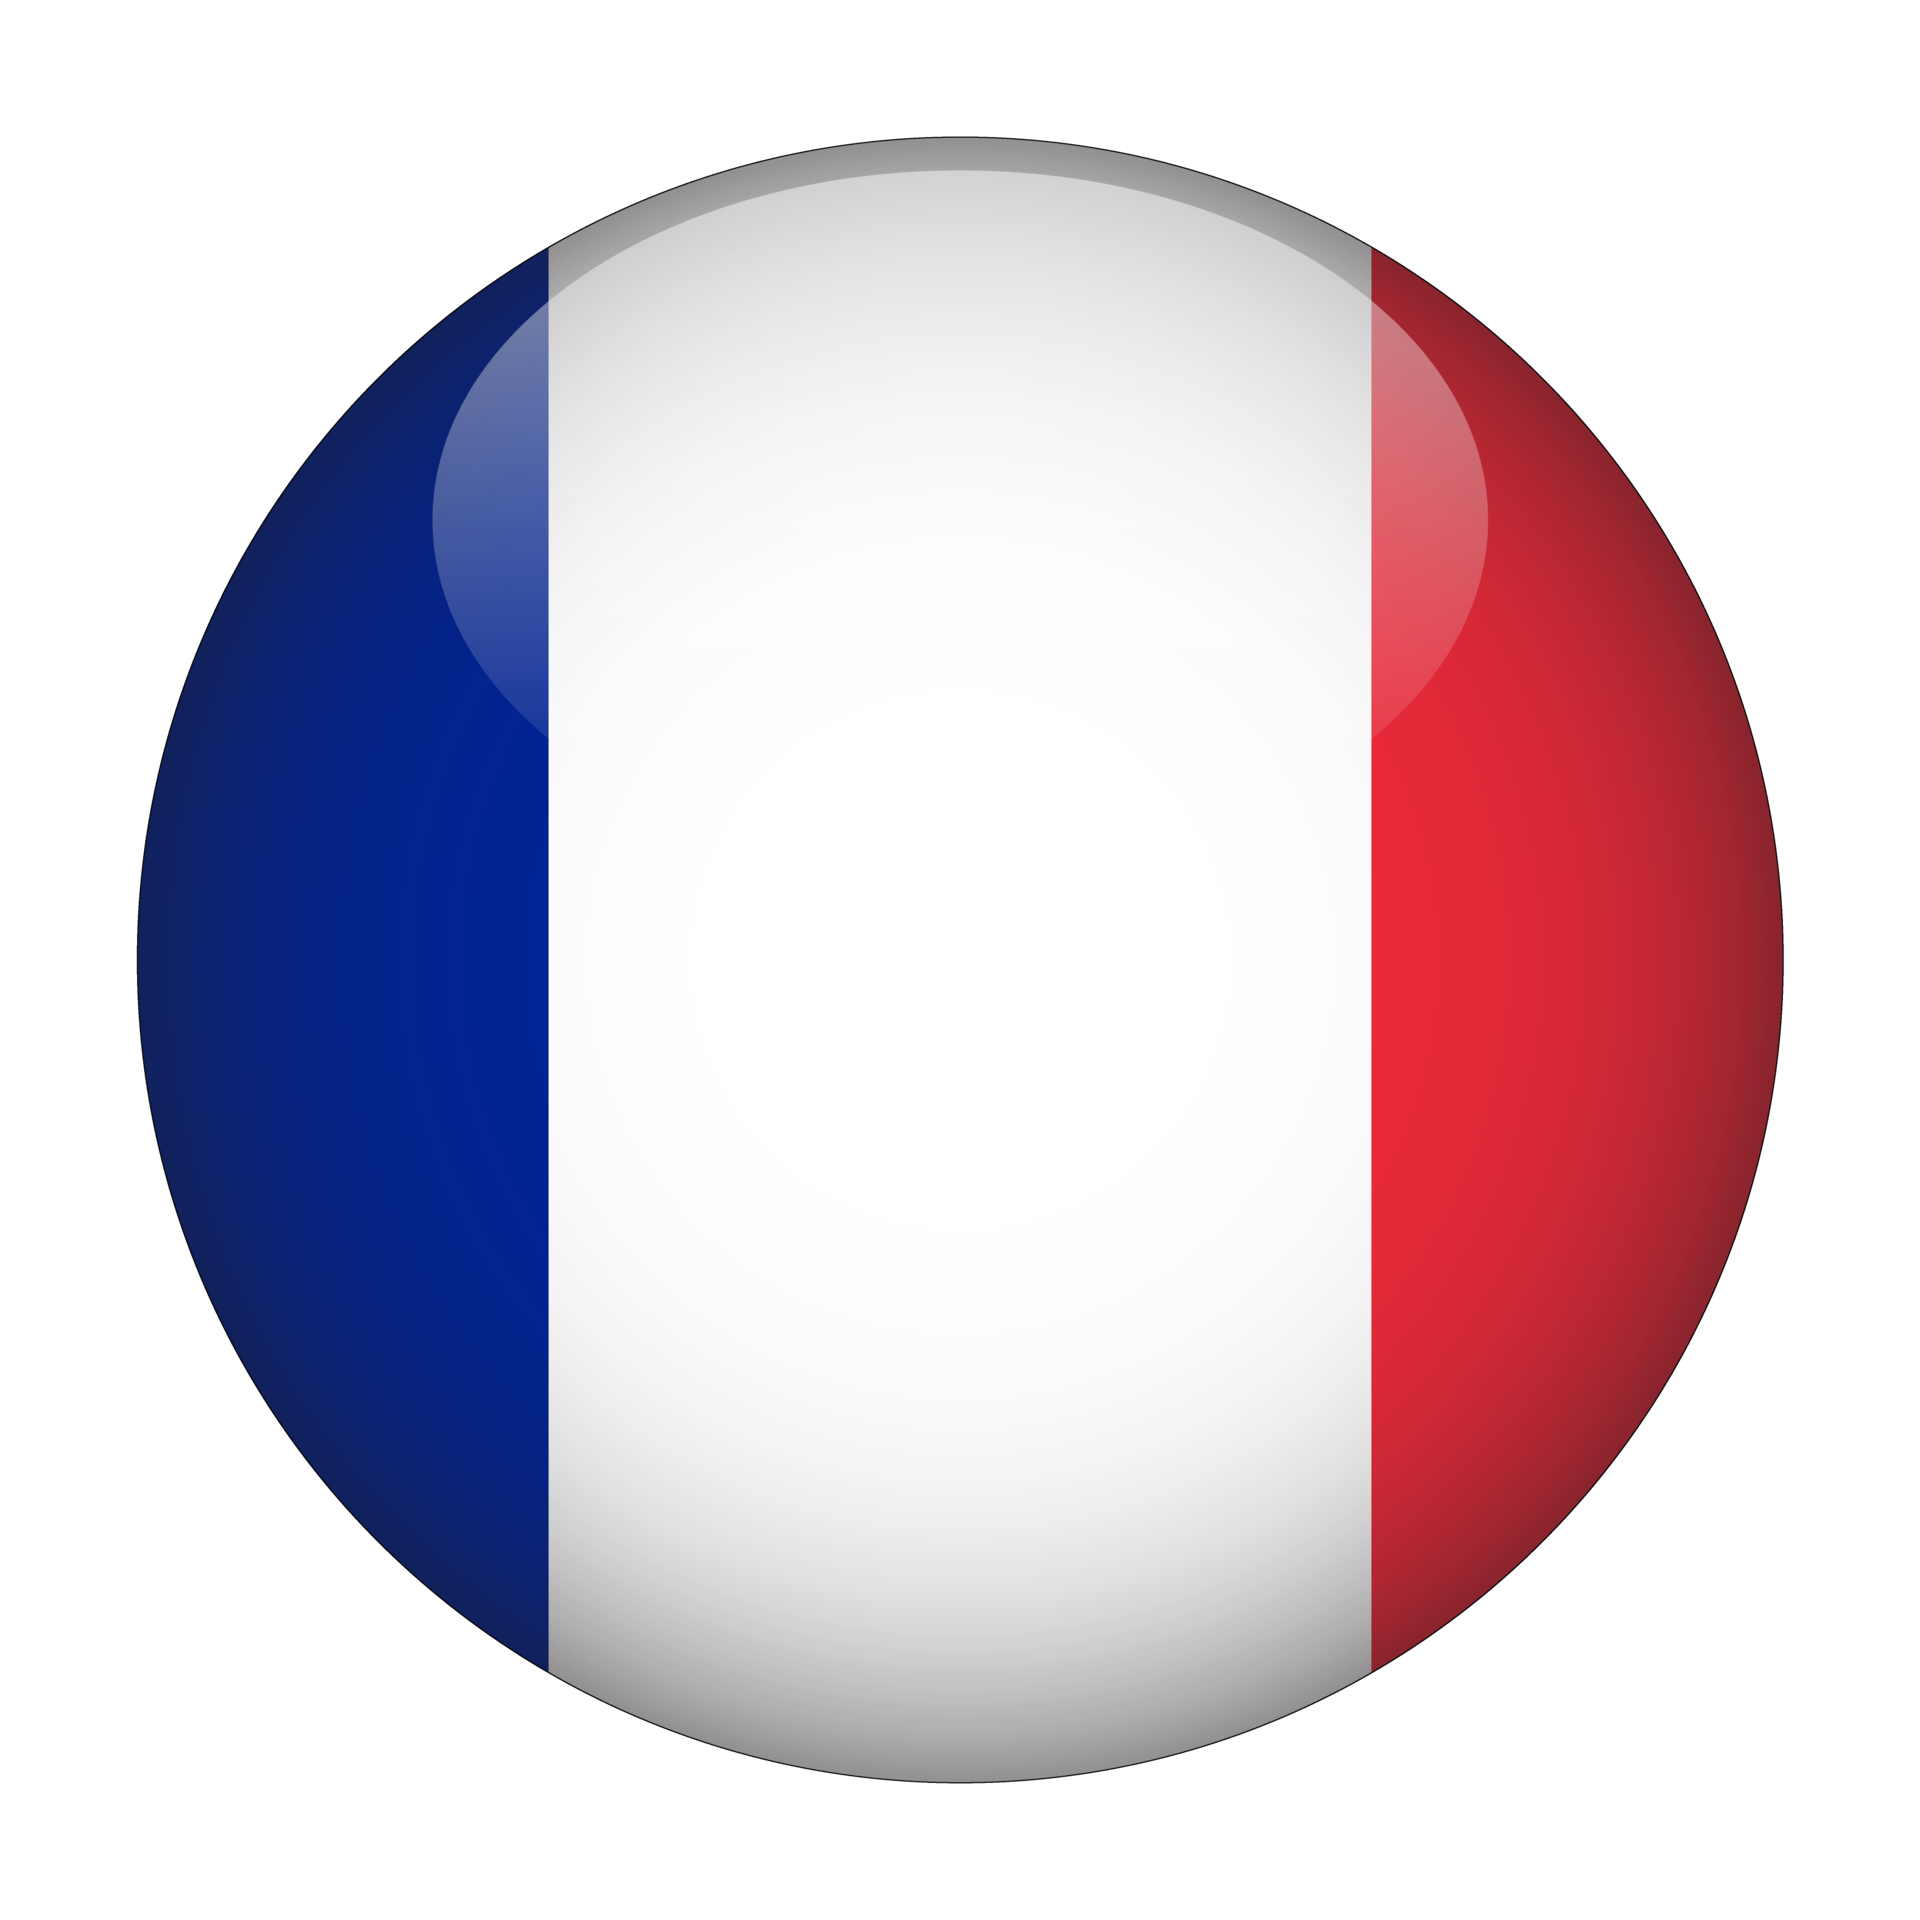 Hãy đến với hình ảnh cờ Pháp miễn phí để khám phá vẻ đẹp thăng hoa của ý chí độc lập và tự do! Tỏa sáng và tràn đầy nghị lực, chiếc cờ này đem lại niềm hy vọng và khát khao cho tương lai tươi sáng hơn. Chắc chắn là một bức ảnh đáng để trân trọng!